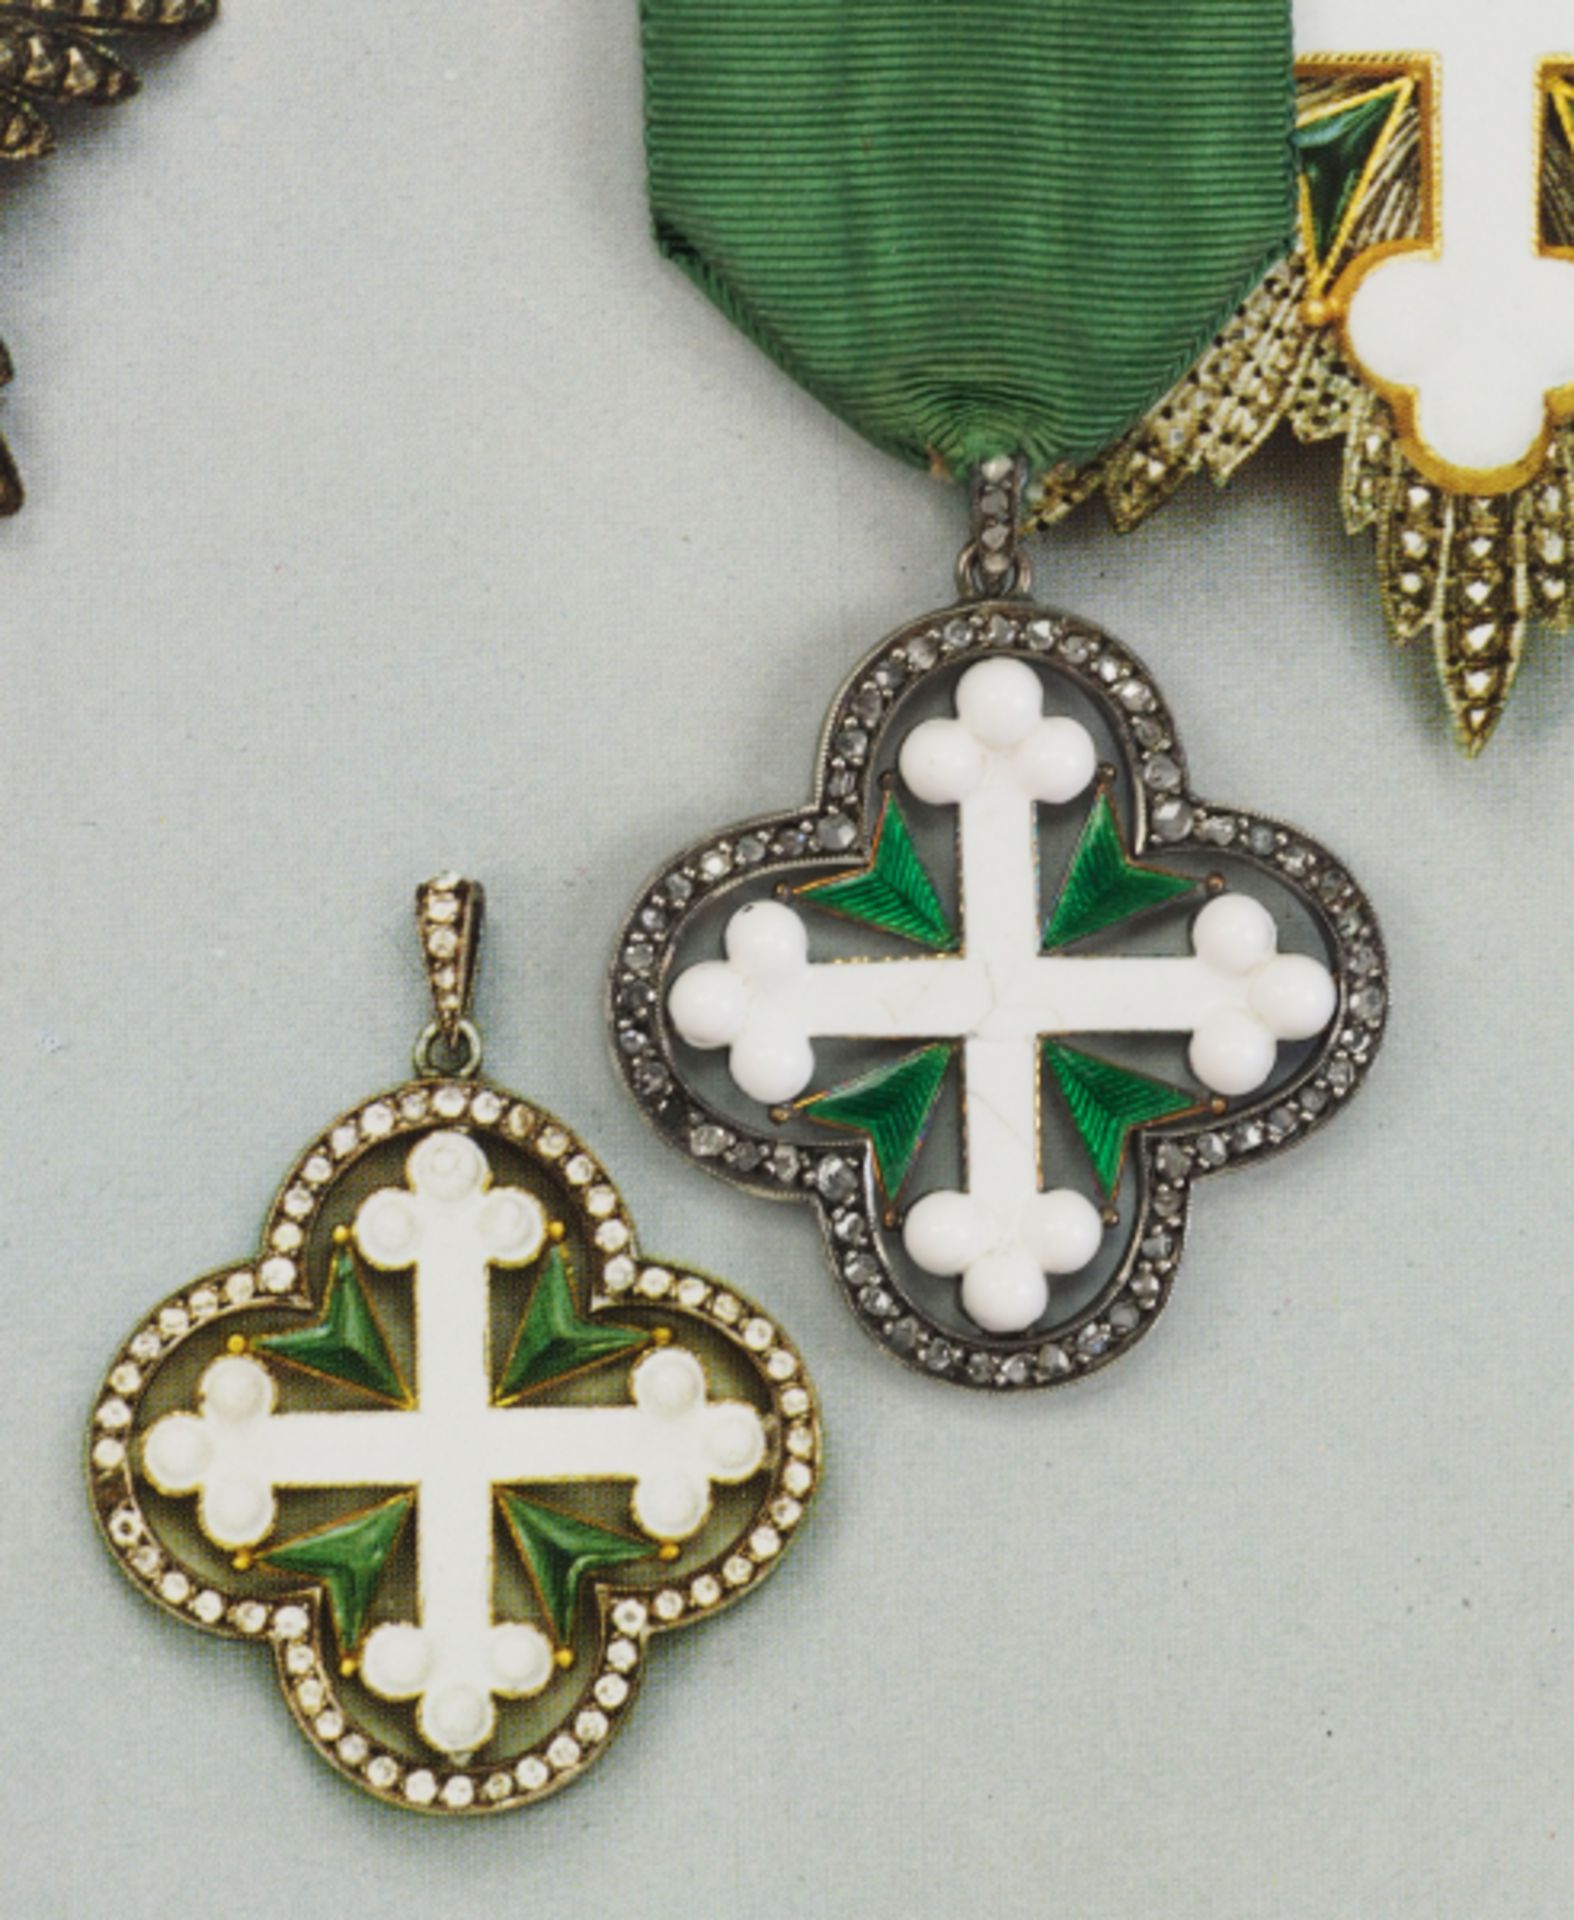 Italien: Ritterorden des heiligen Mauritius und heiligen Lazarus, Kleindekoration des Großkreuzes. - Bild 6 aus 6